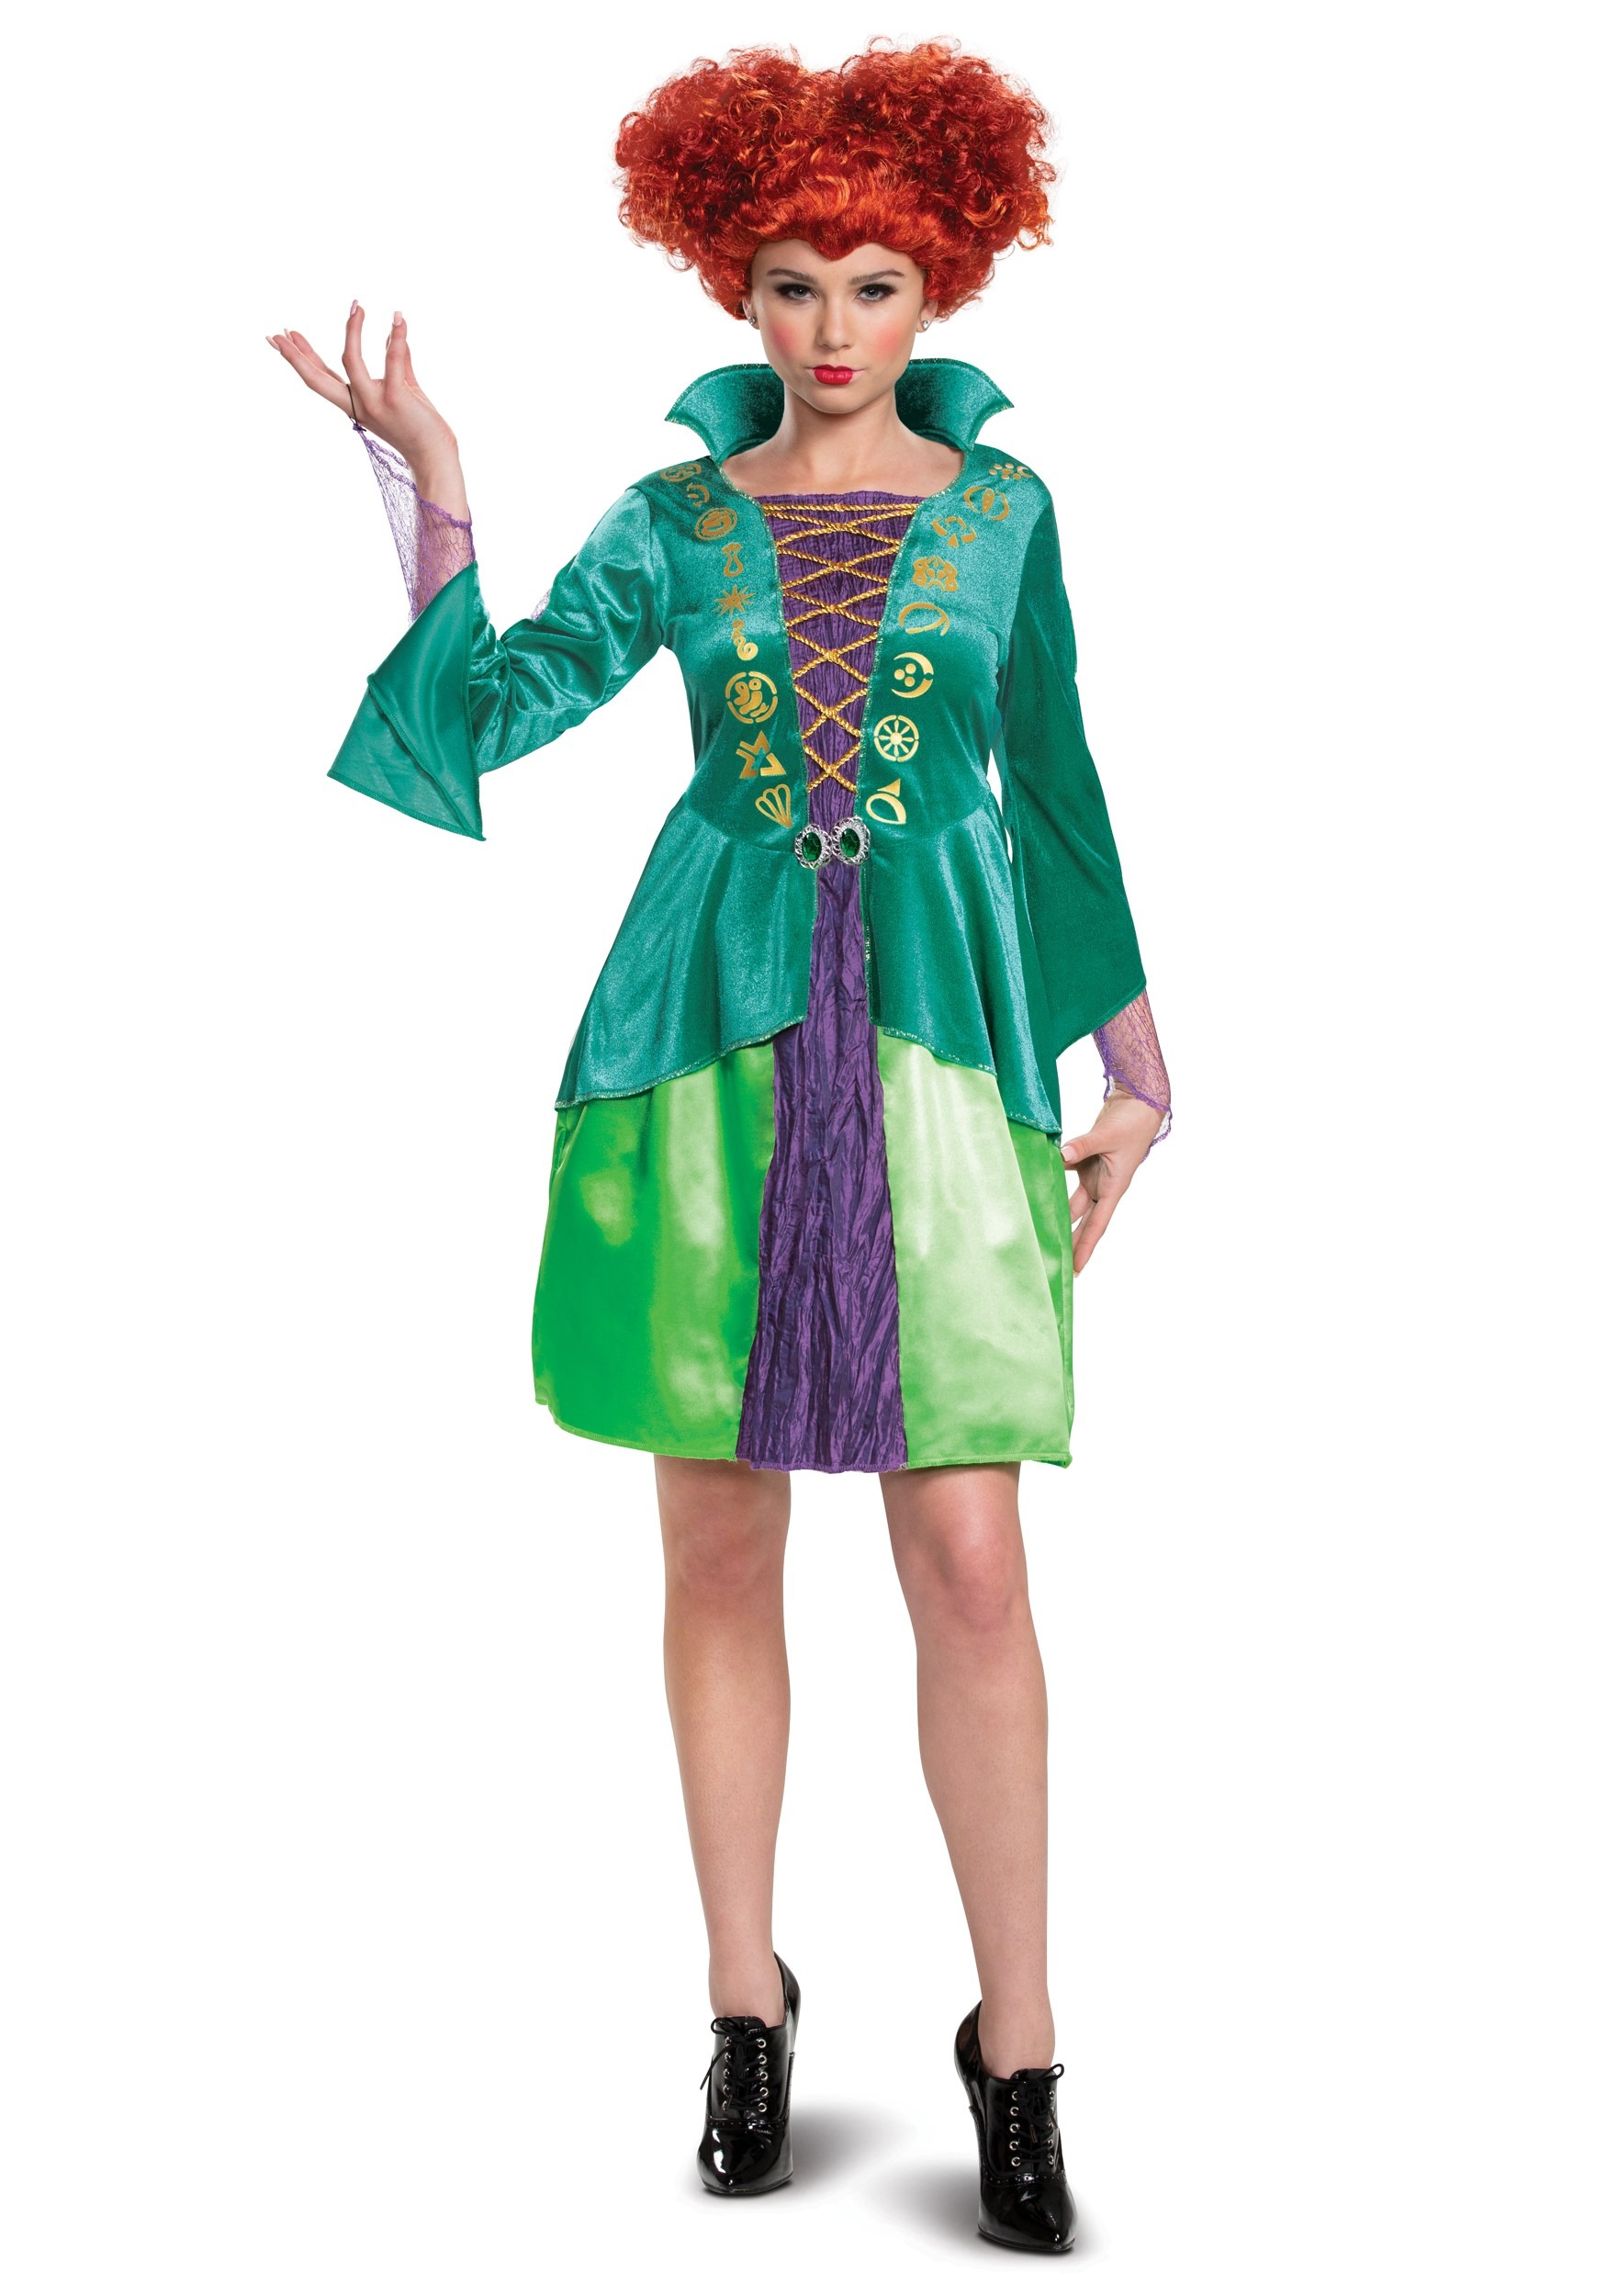 Image of Adult Disney Hocus Pocus Classic Wini Costume Dress | Disney Costumes ID DI15191-M